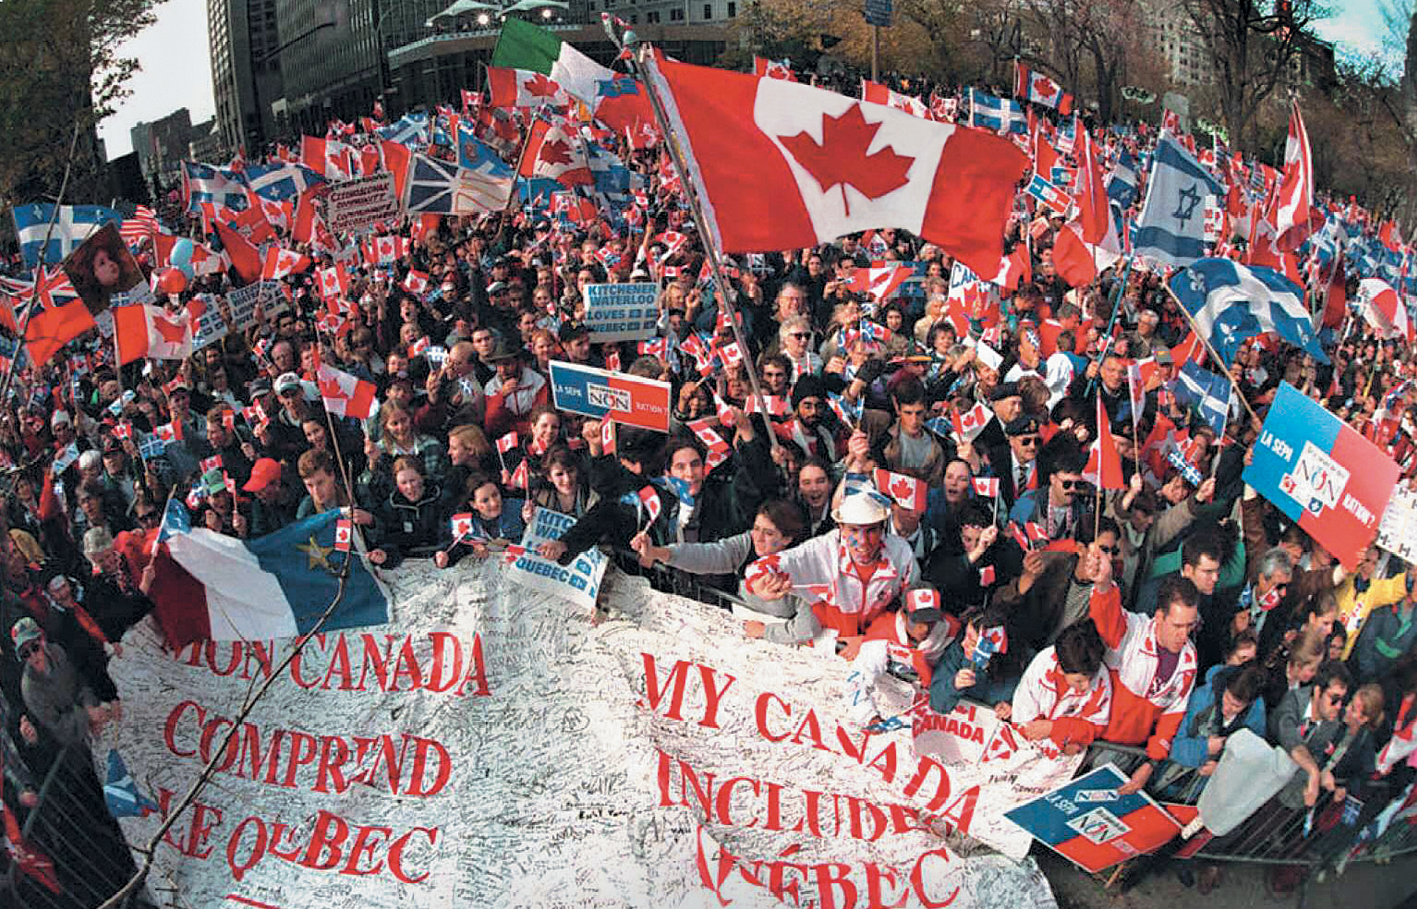 Fotografia. 
Vista de um espaço aberto com uma aglomeração de pessoas segurando bandeiras do Canadá, entre outras, cartazes e uma grande faixa branca com escritos em vermelho no primeiro plano.